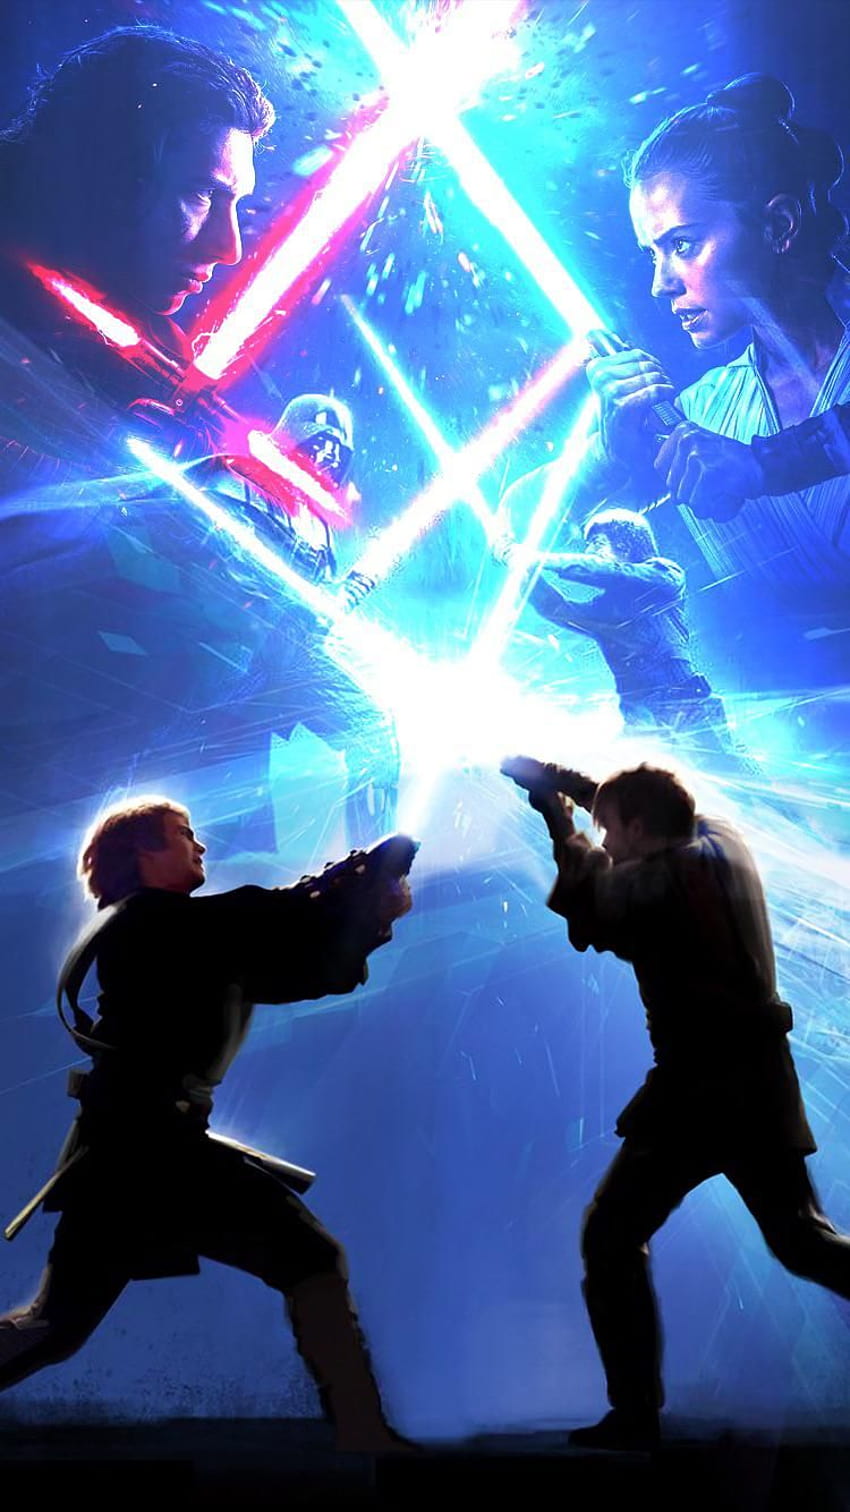 HD wallpaper Star Wars Anakin Skywalker ObiWan Kenobi Star Wars  Episode III Revenge Of The Sith  Wallpaper Flare